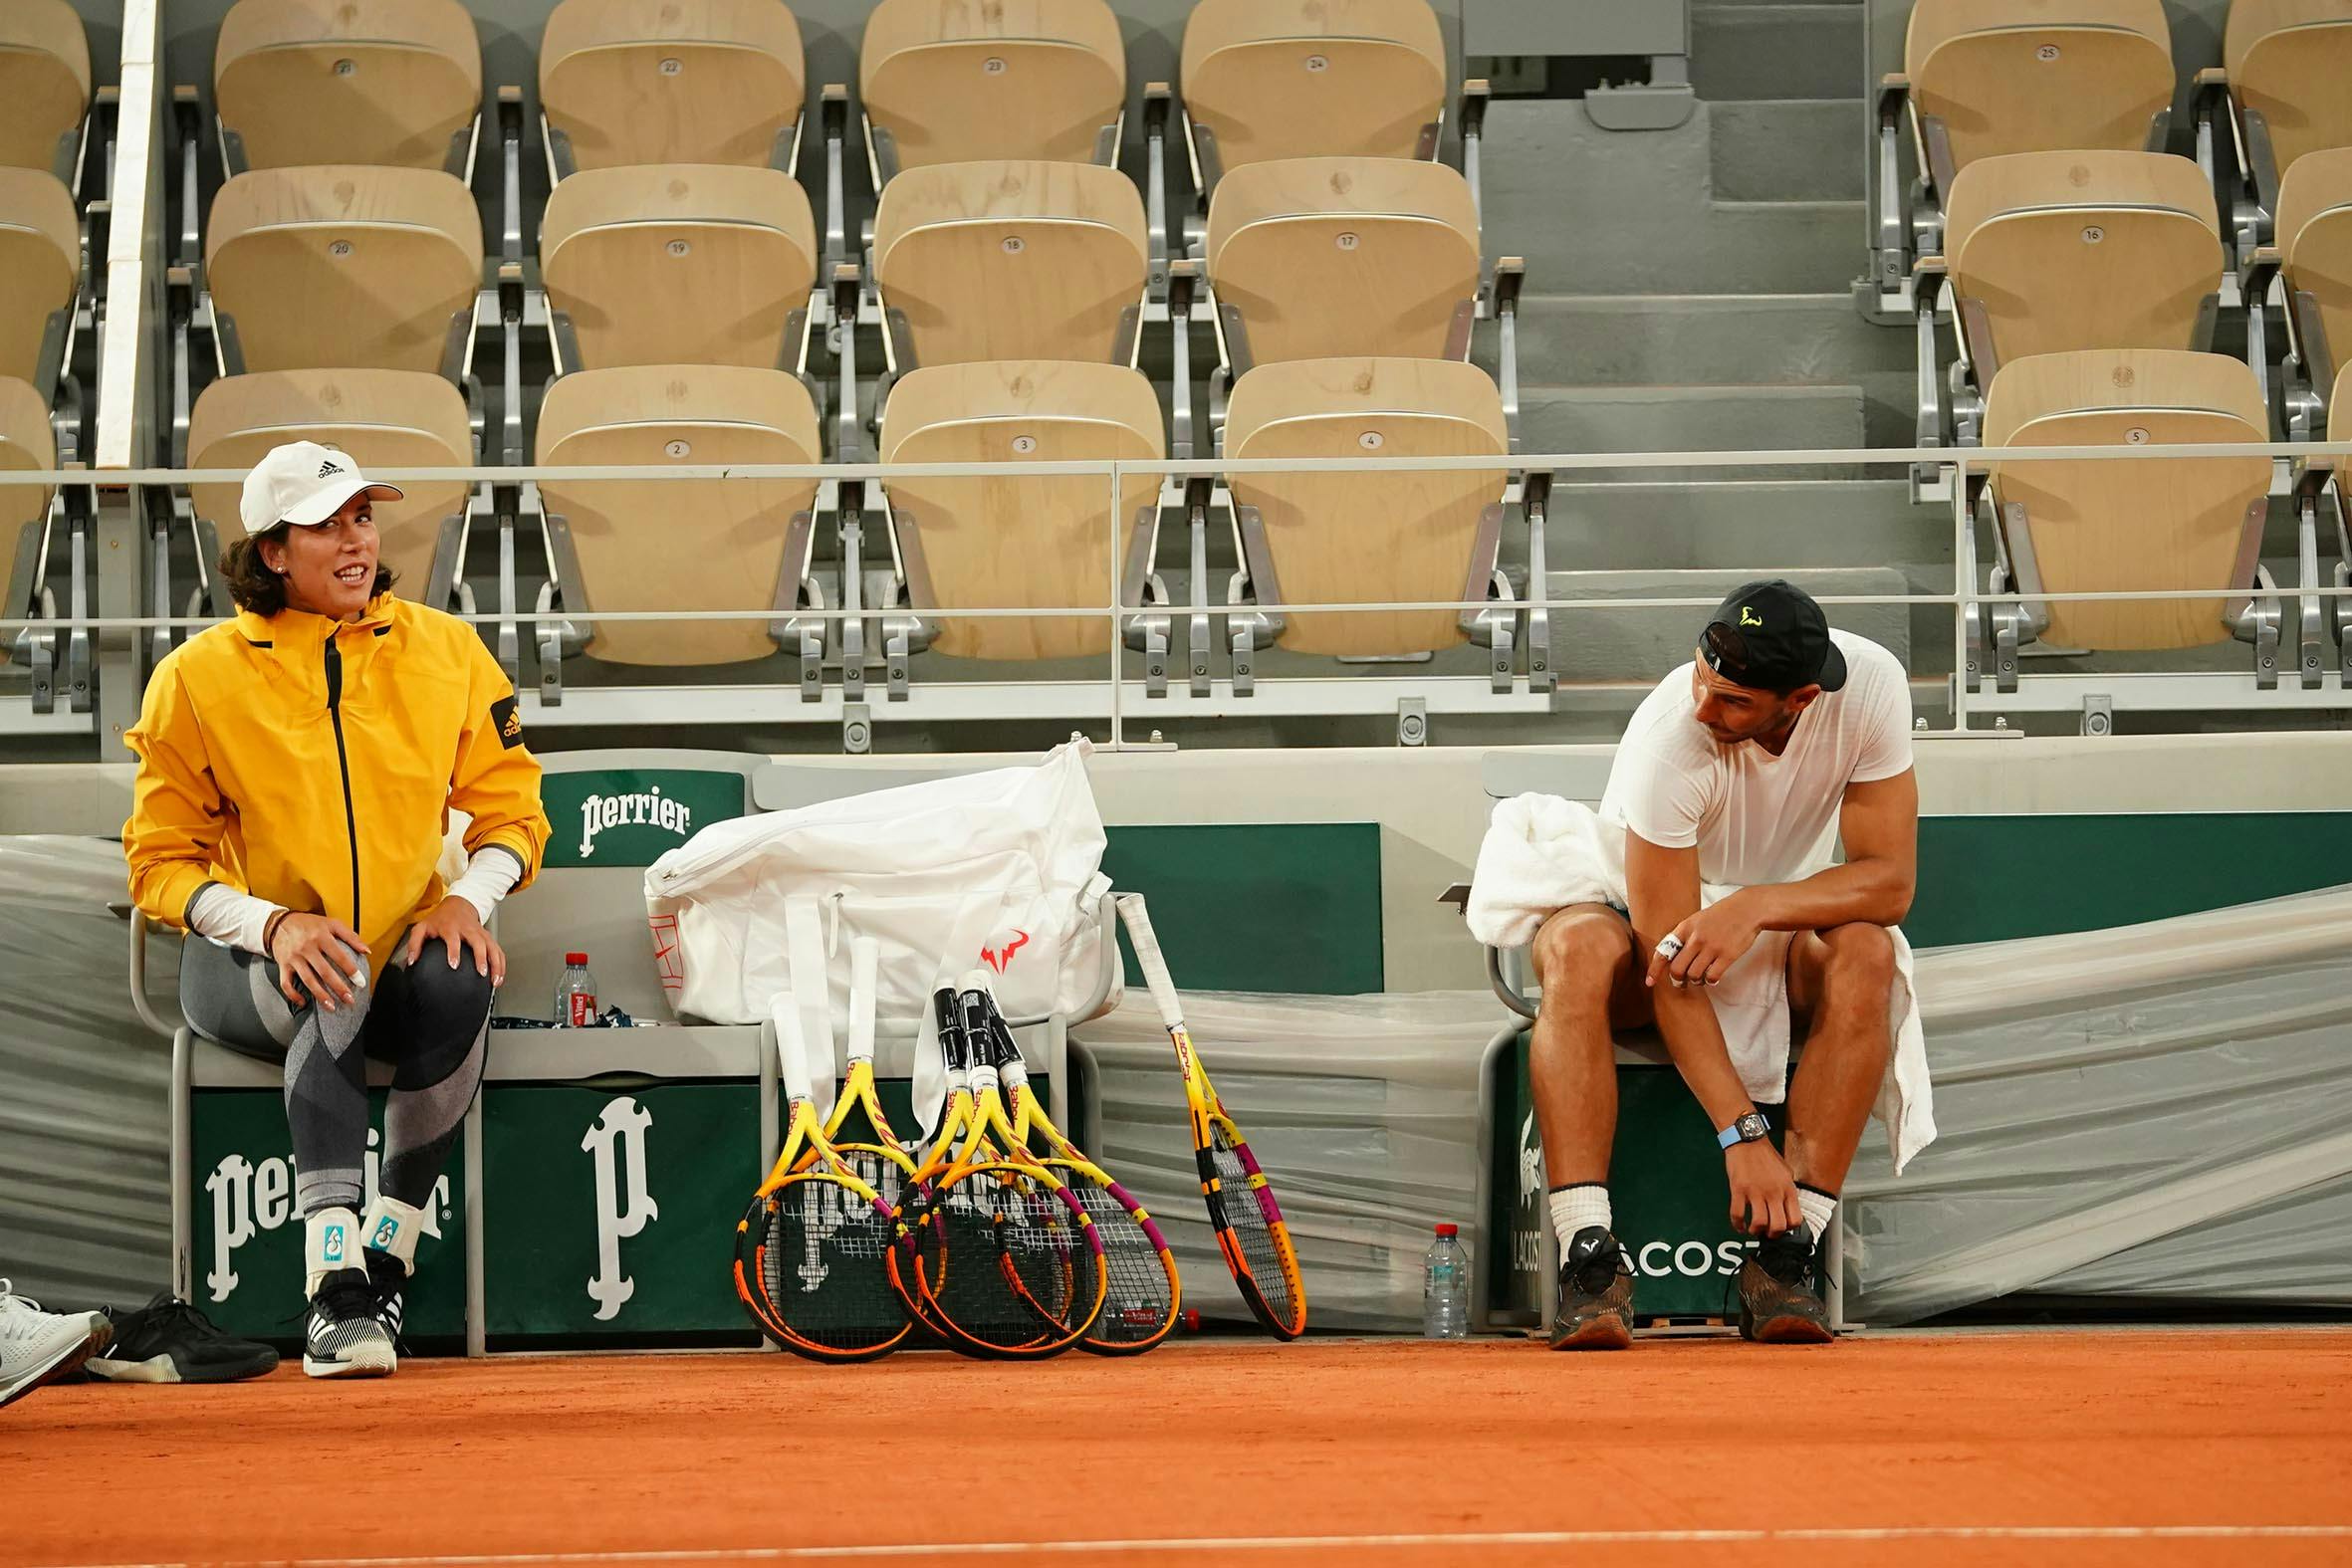 Nadal Muguruza practice Roland-Garros 2020